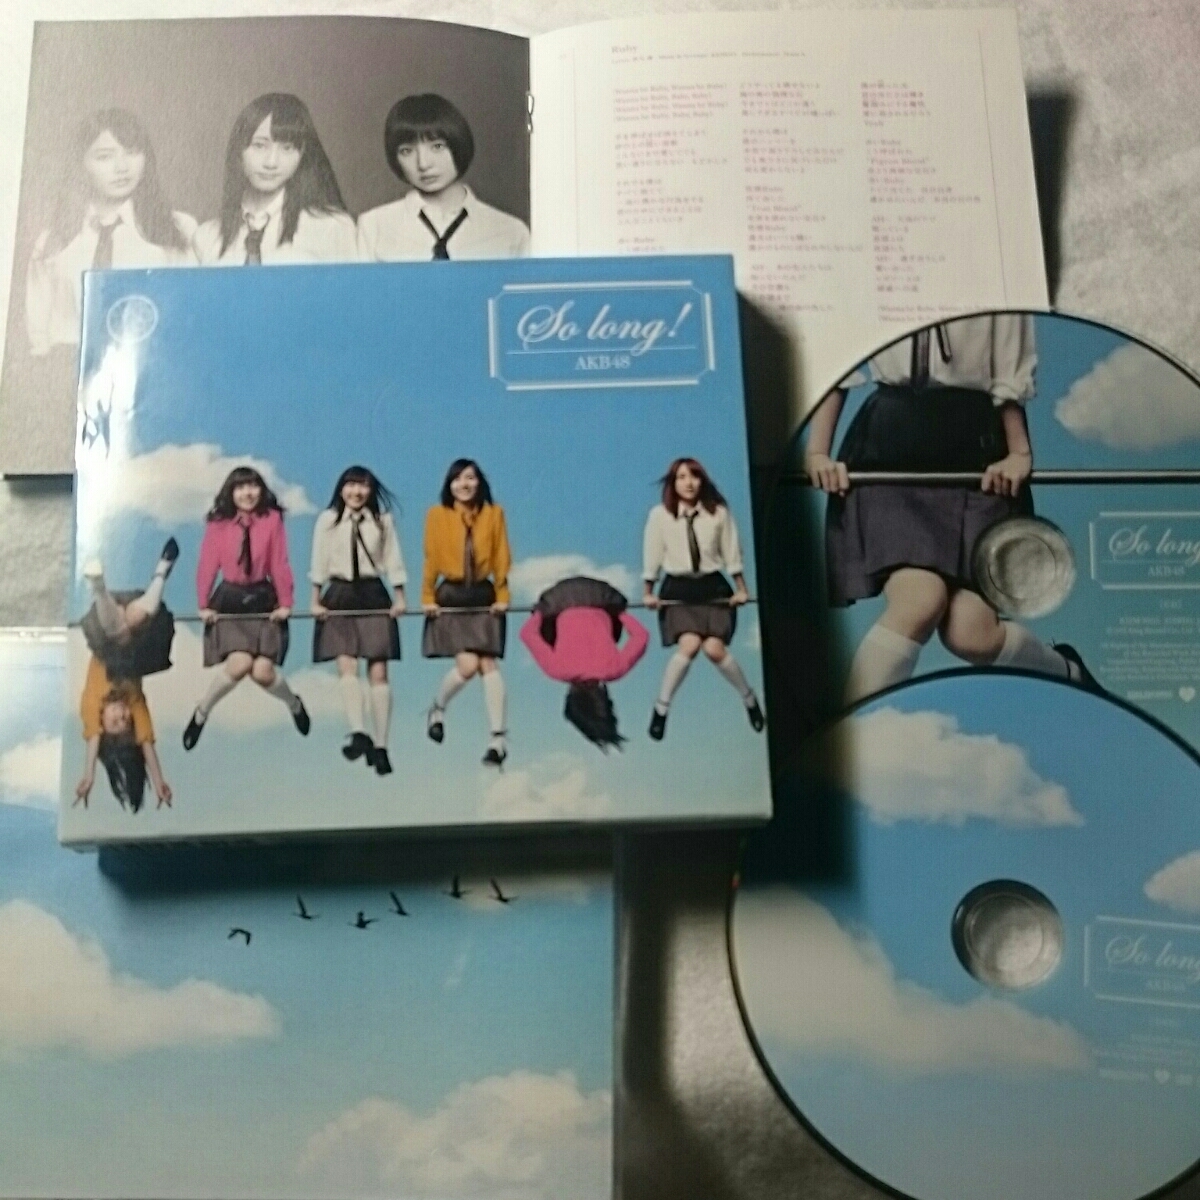 【10点以上の落札で2割引！】(T-3)AKB48/So long/CD+DVD_画像2